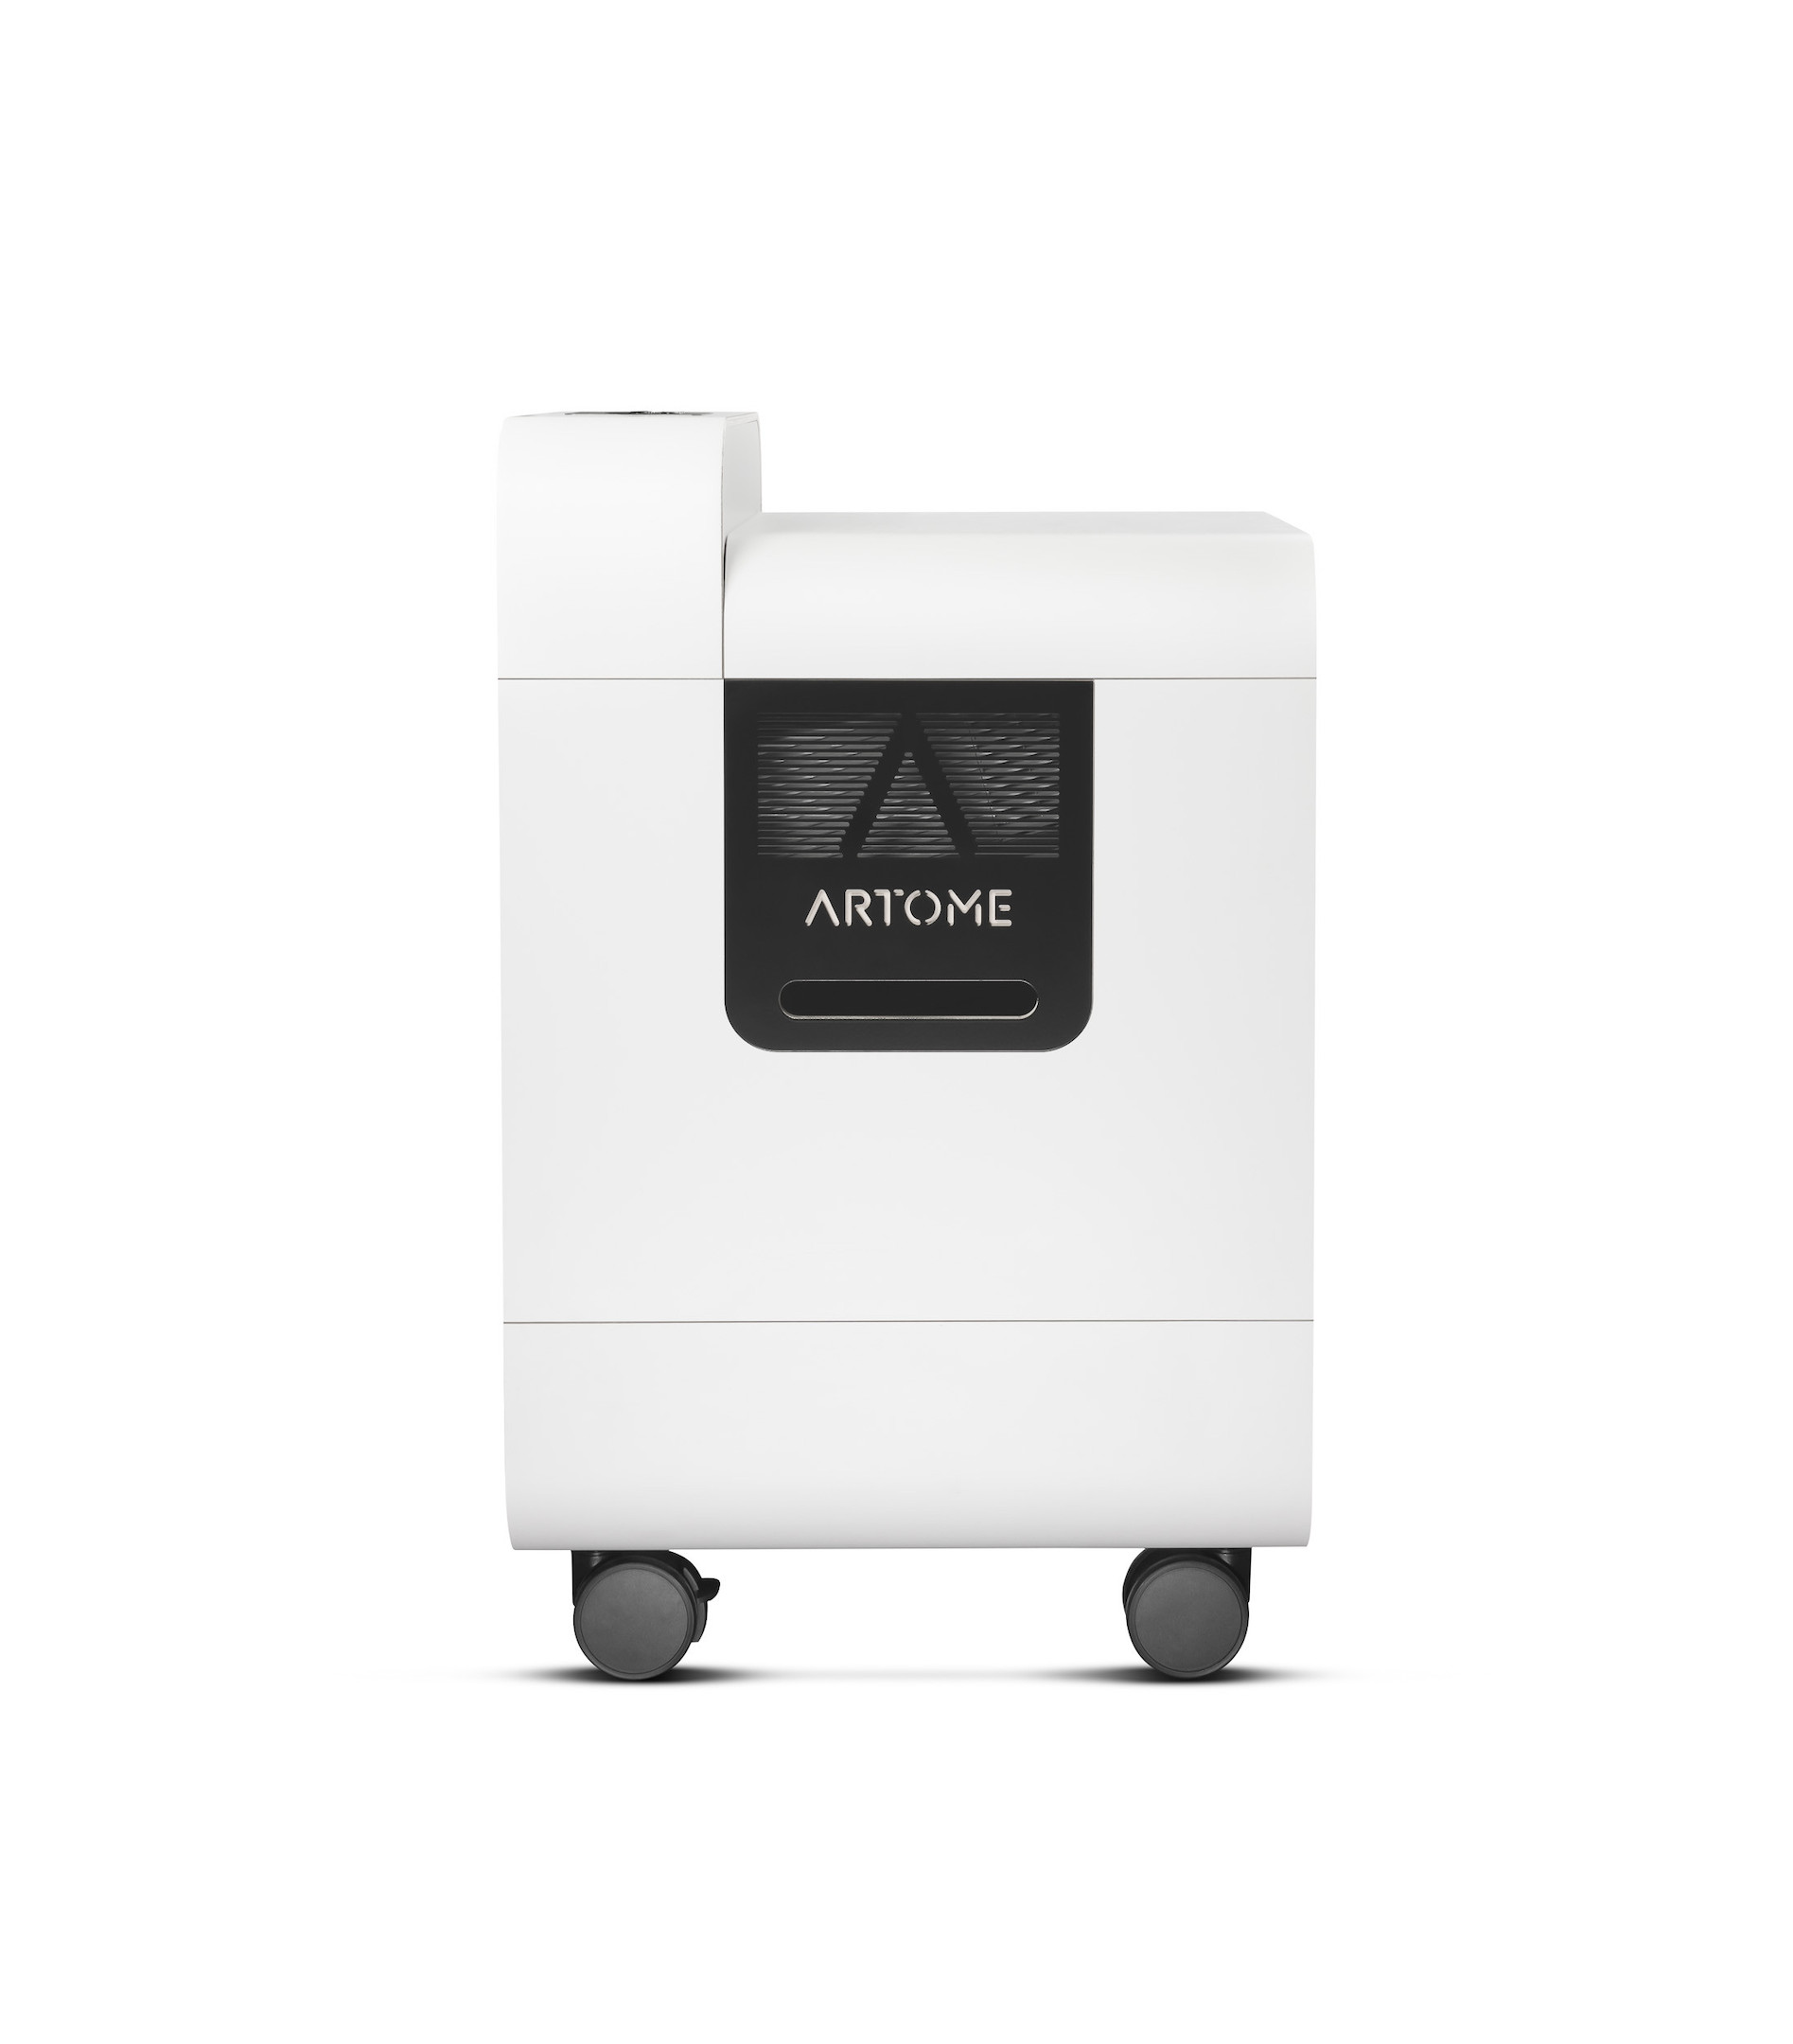 Artome-X20-alles-in-een-oplossing-met-Epson-EB-PU1007-projector-voor-feestzalen-en-evenementen